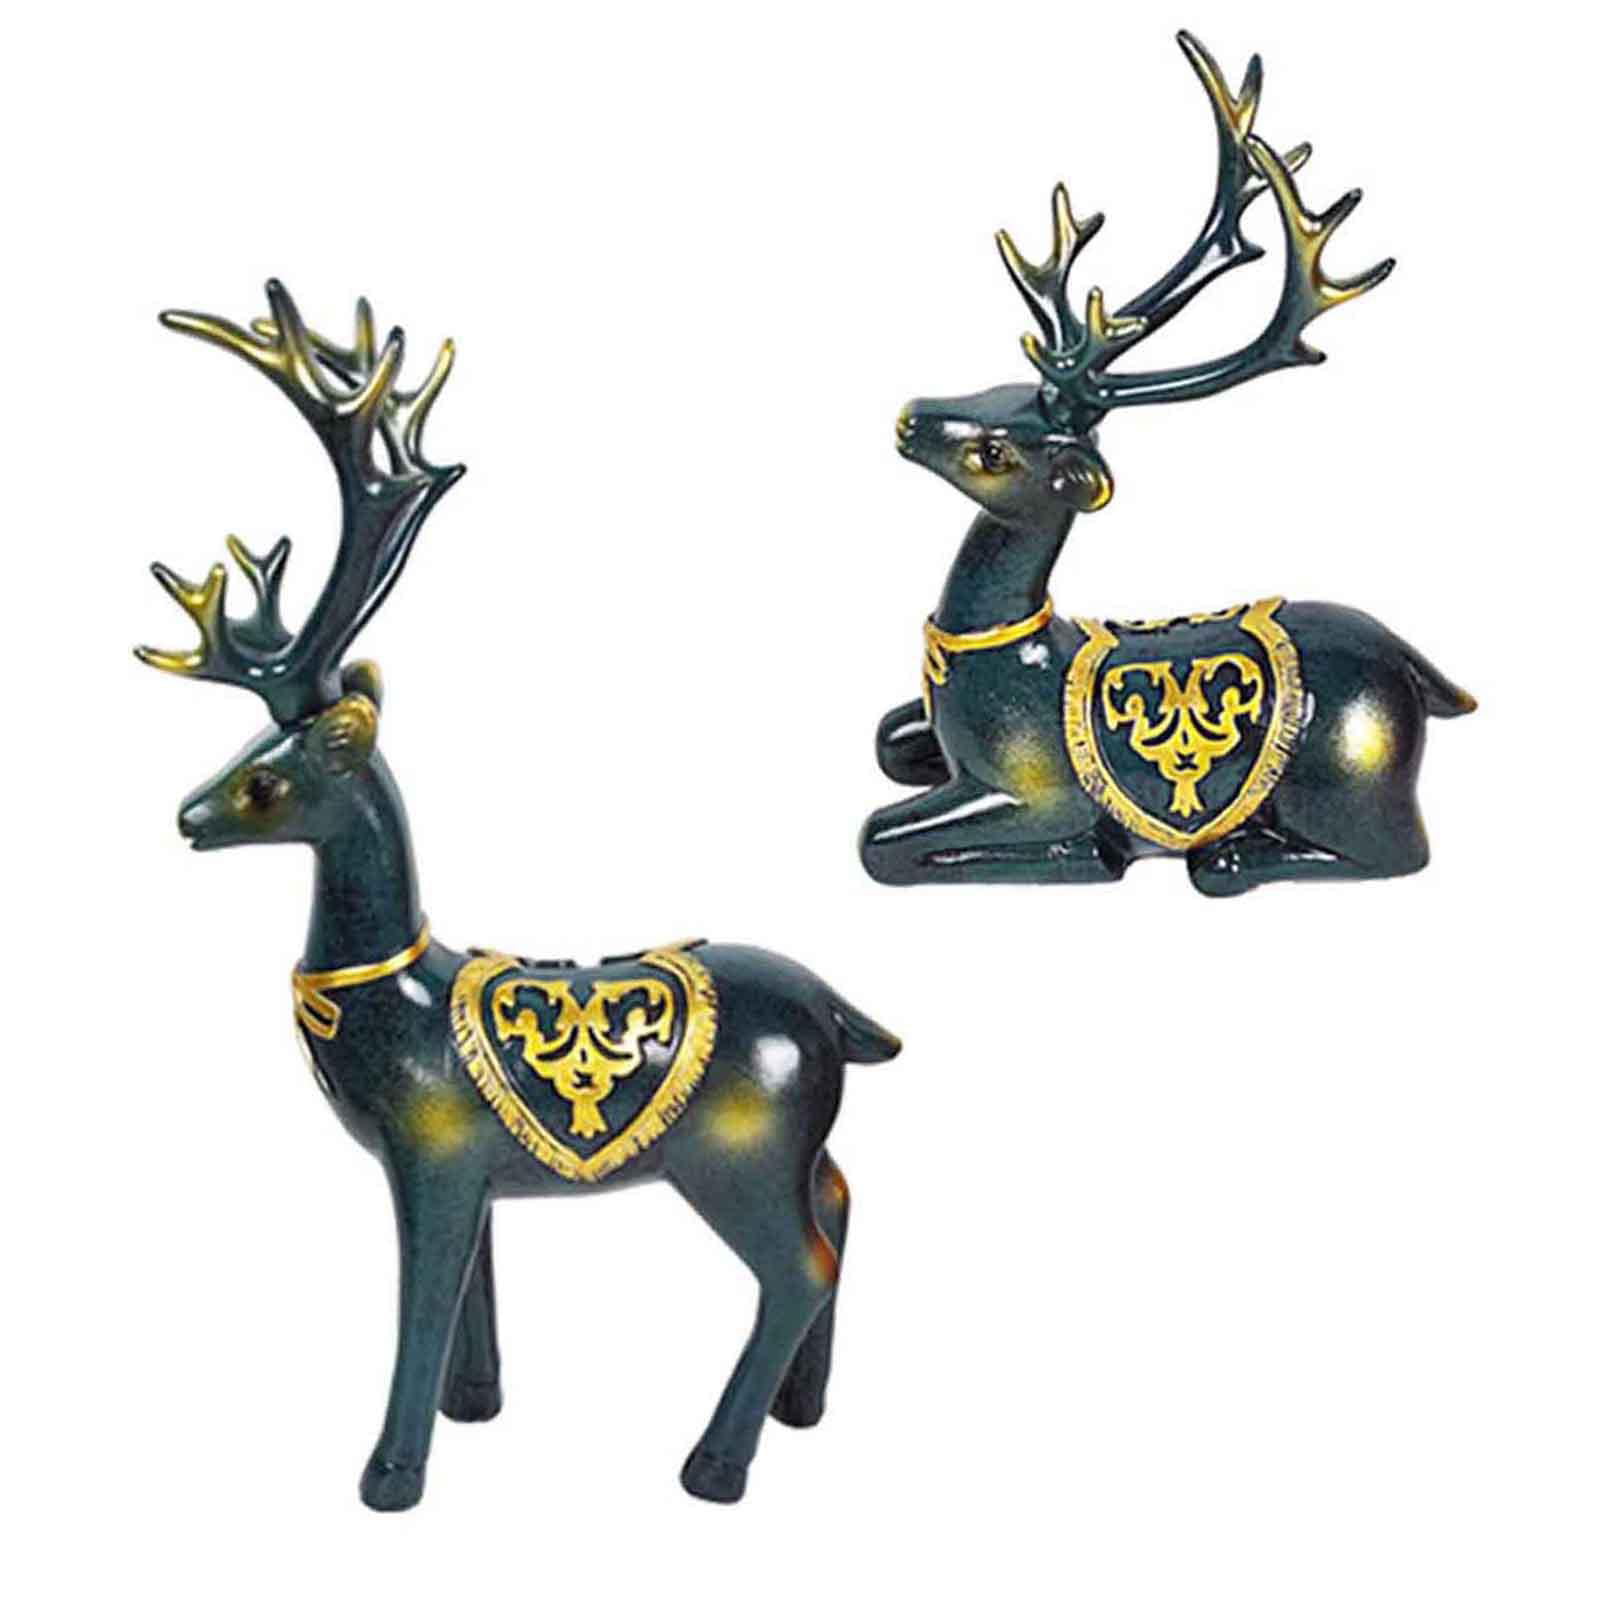 Assorted Elk & Deer Antlers 1/2 Lb Bag Crafting MADE TO ORDER Sheds Craft Horn 